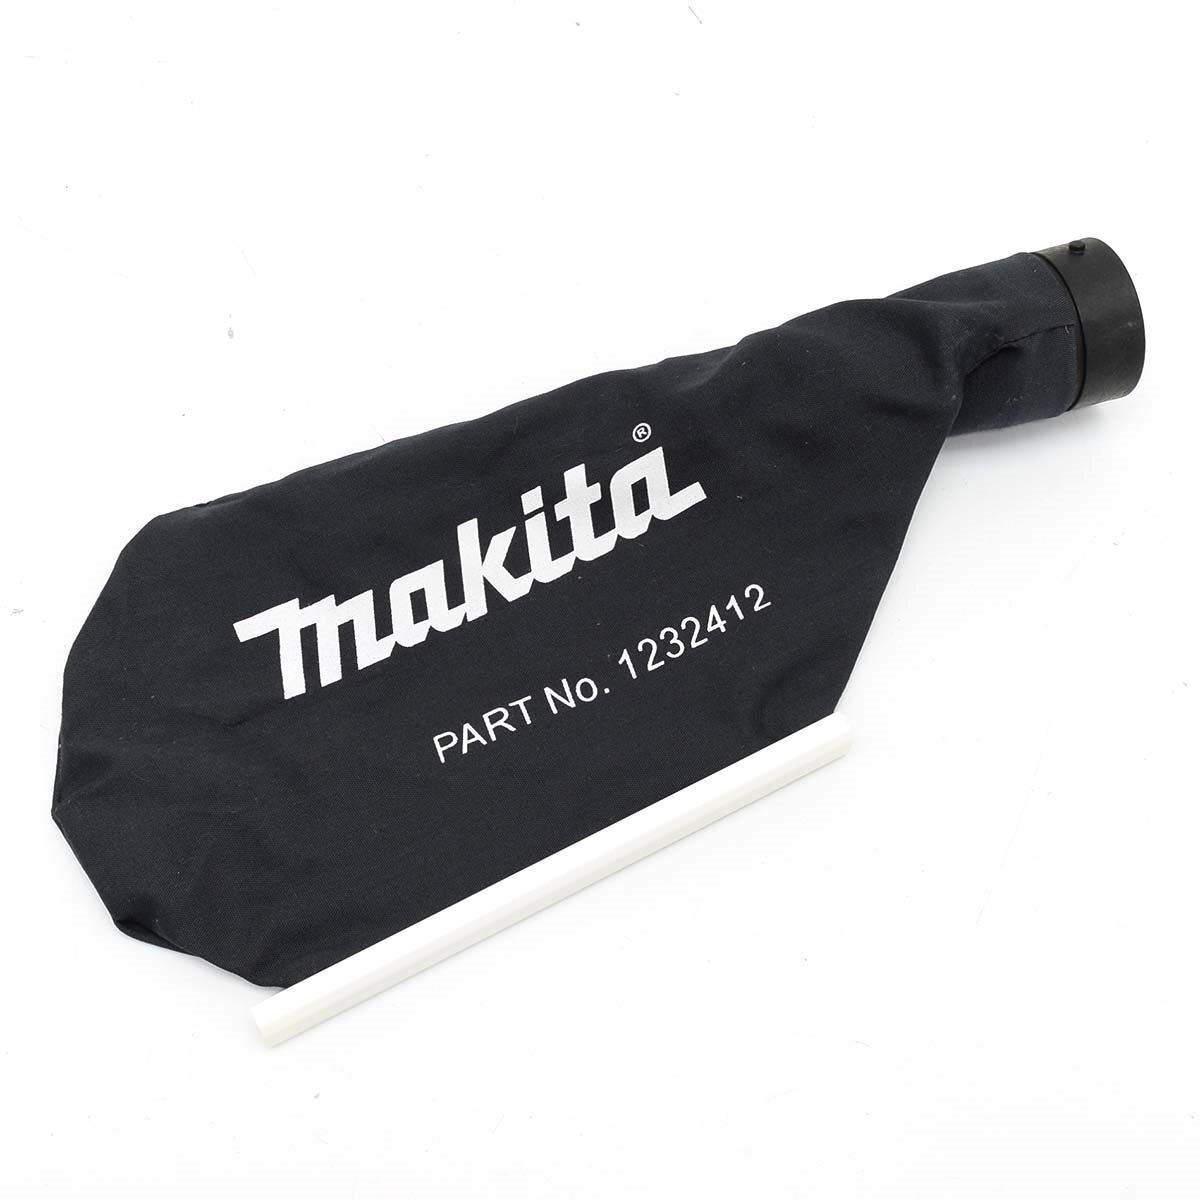 v479573 makita Makita заряжающийся вентилятор UB185D корпус только рабочий товар пыль сумка есть 